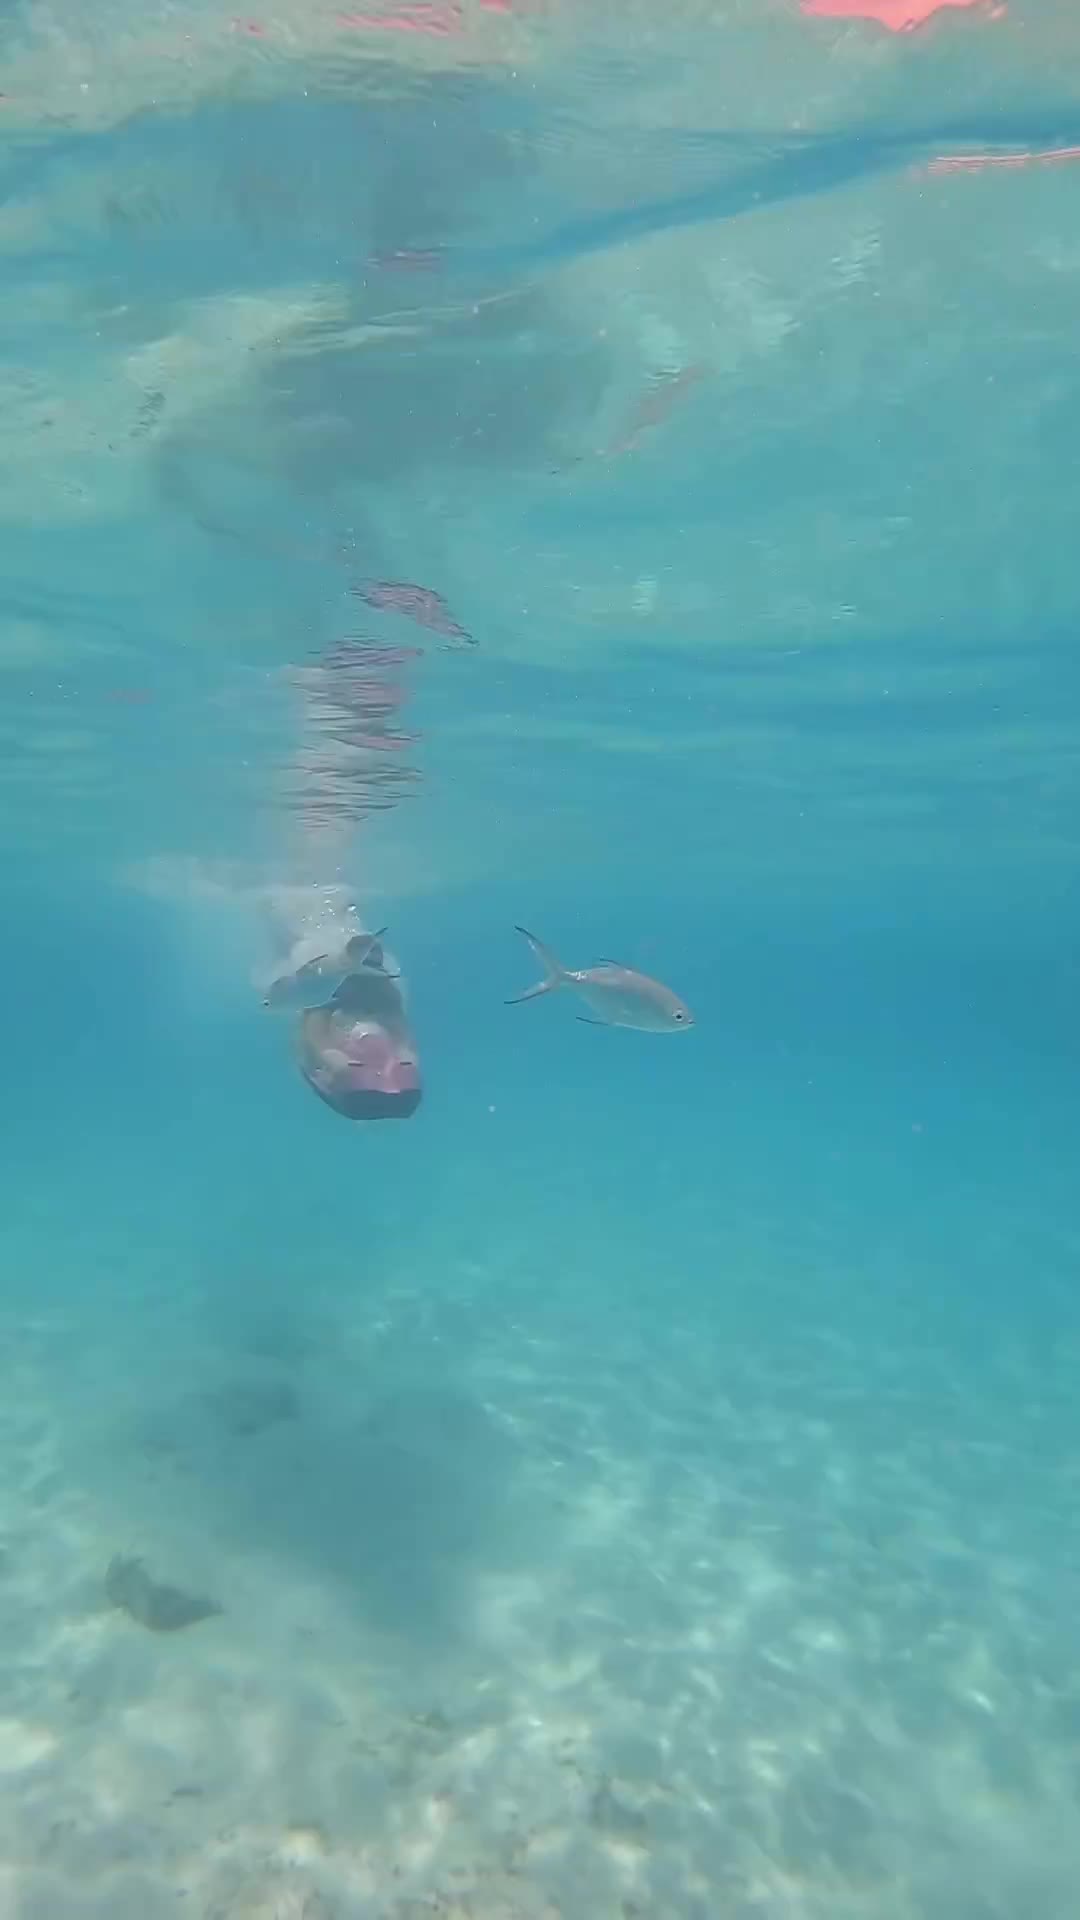 Seabob Adventure in Maldives: Dive into Paradise!